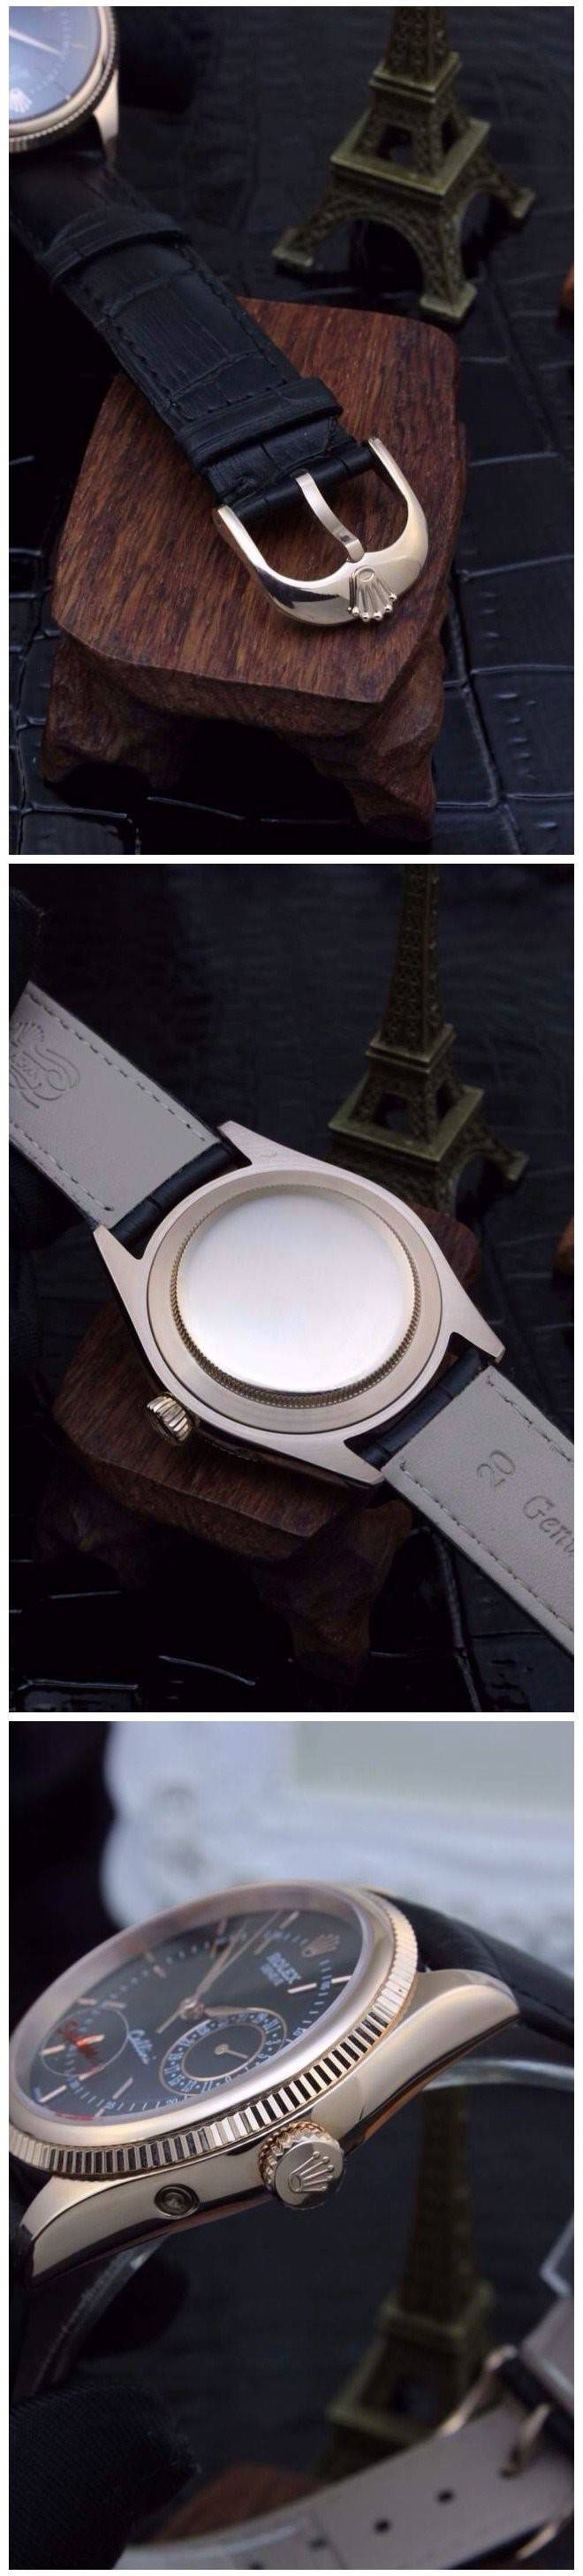 パネライスーパーコピー2841オートマチック新作 腕時計 メンズ スイス 自動巻き